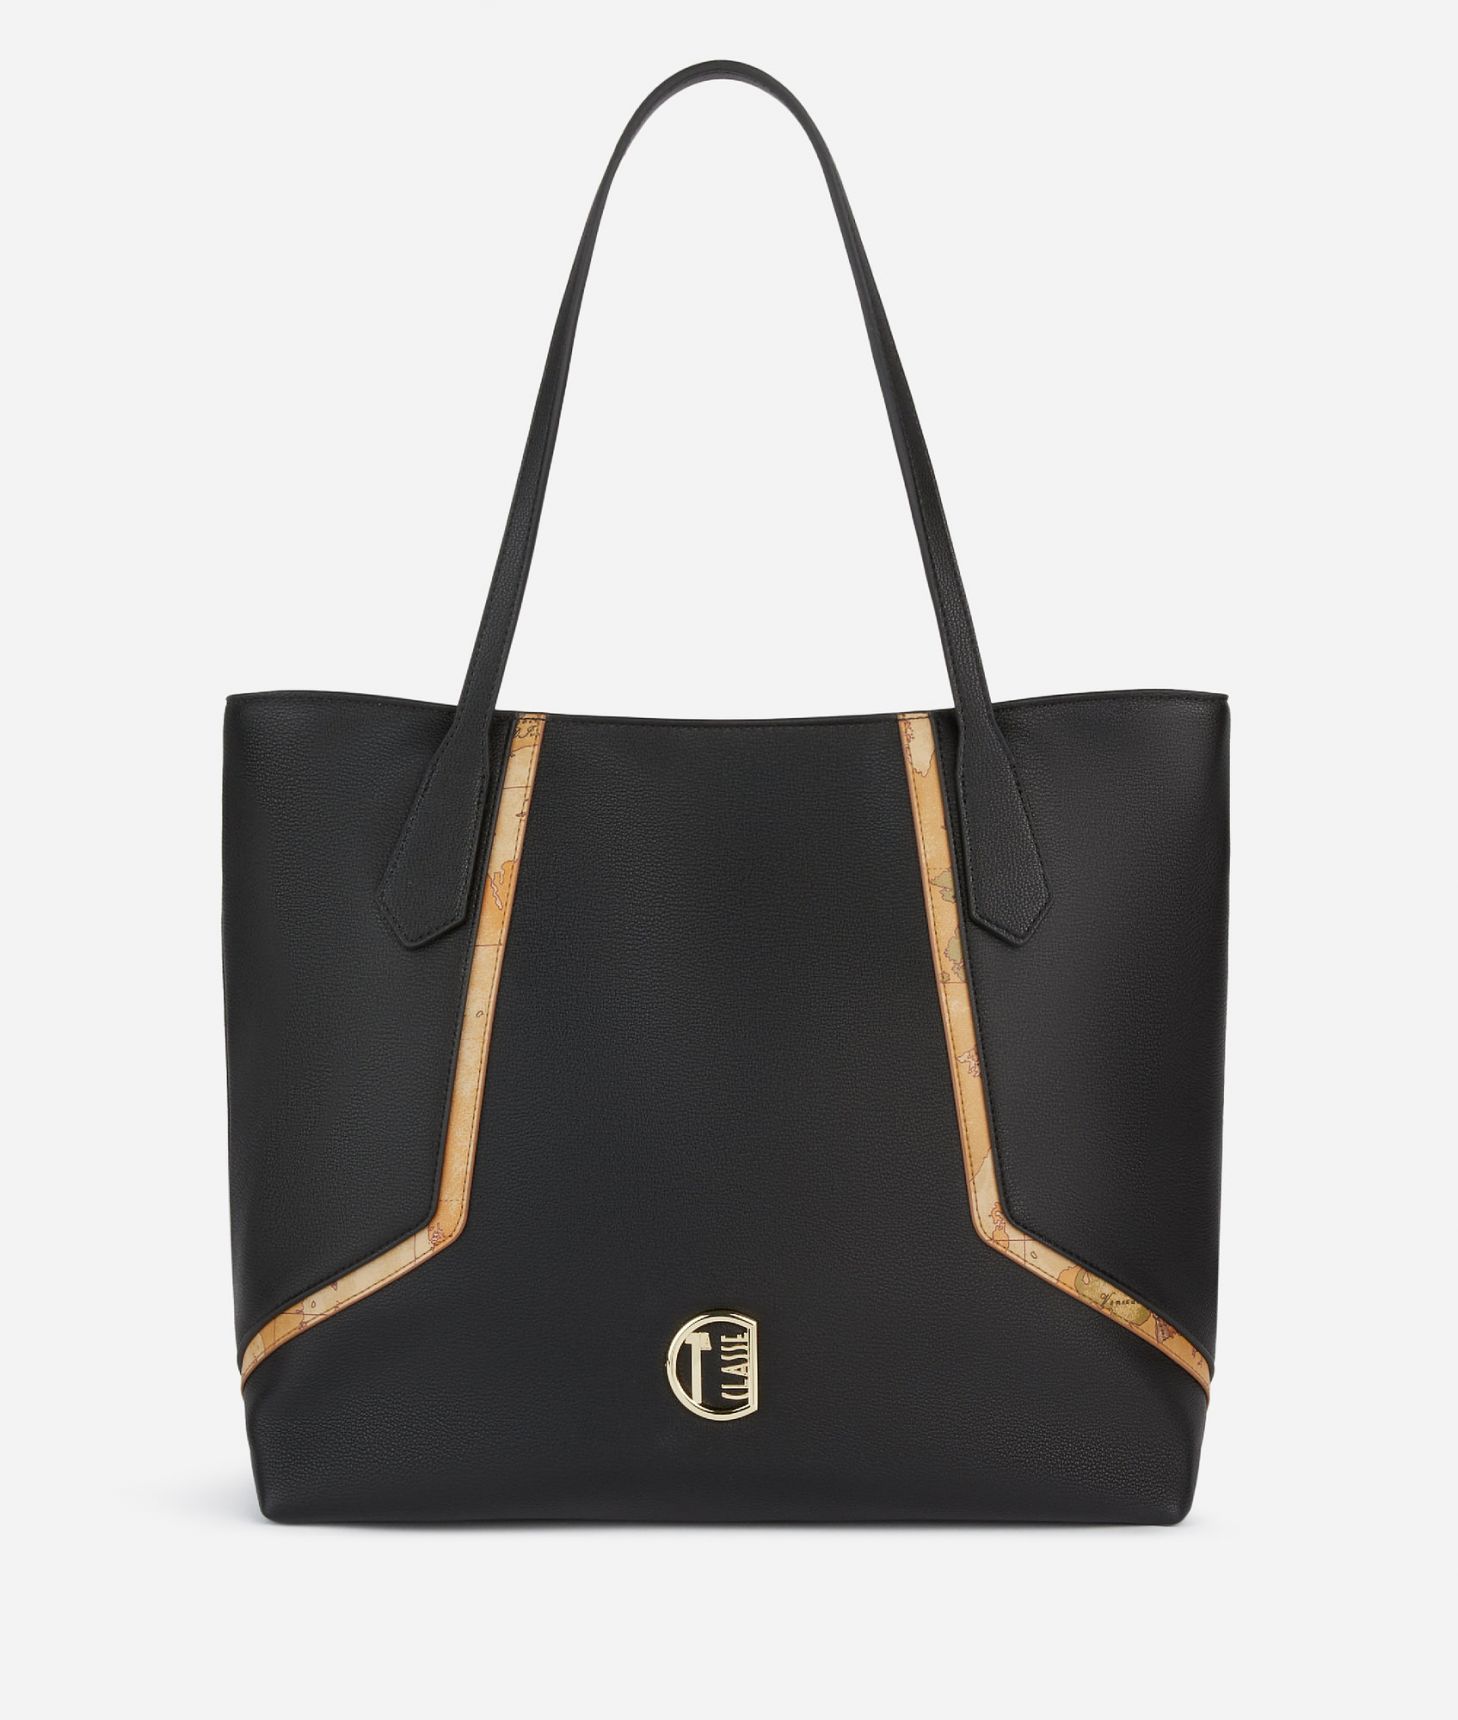 Crystal River shopper bag Black,front